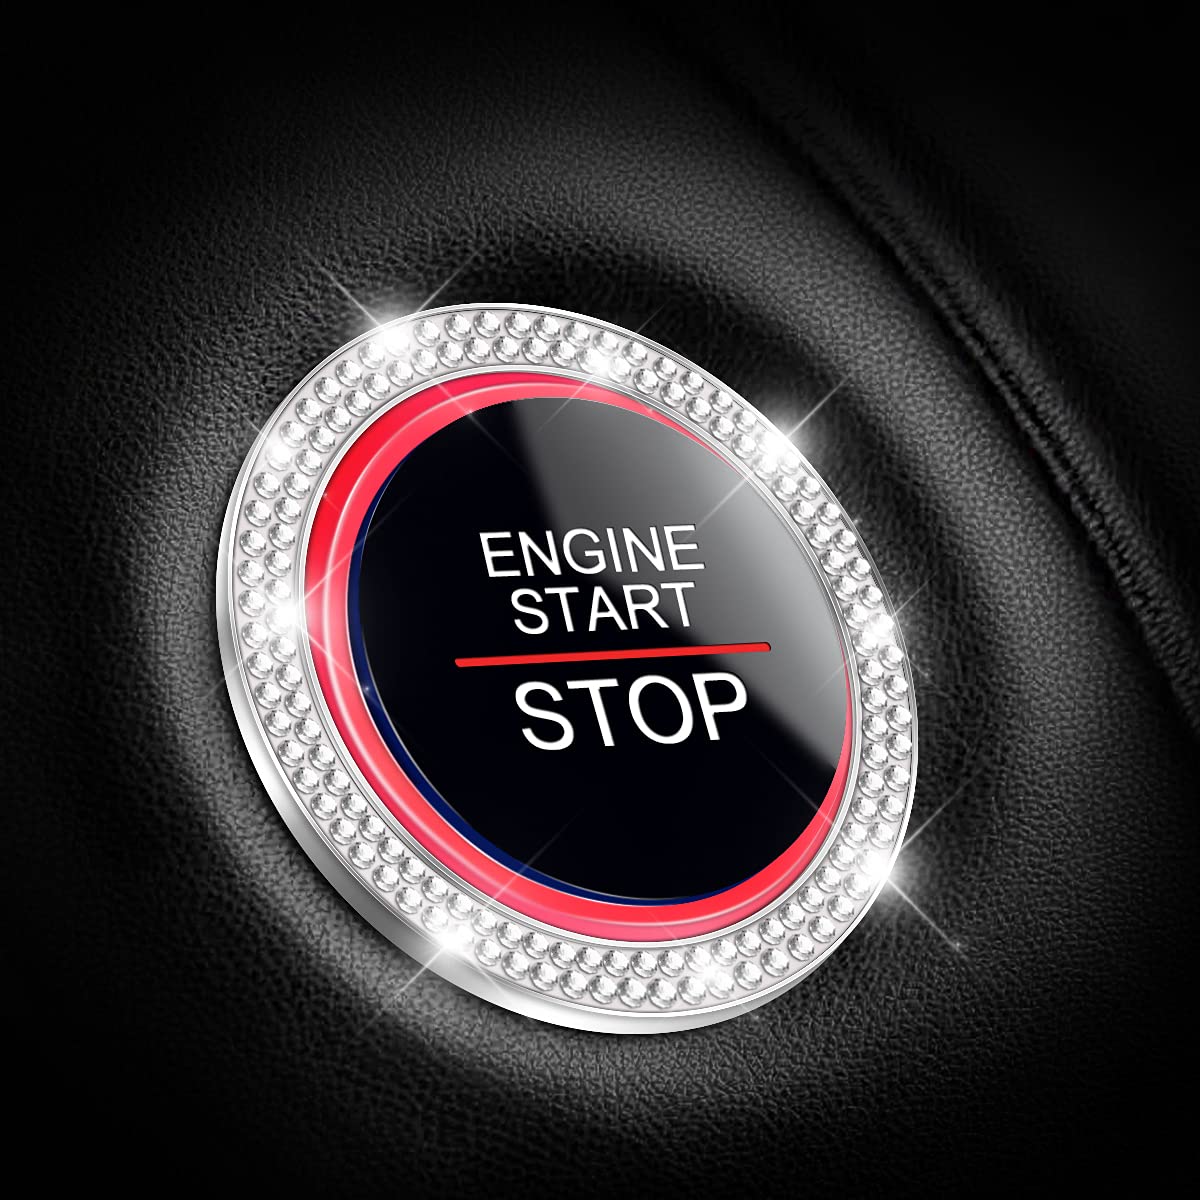 CGEAMDY 2 Stück Auto Motor Start Stop Button Ring, Universal Auto Kristall Strass Motor Starter Dekoration Ring, Auto Startknopf Dekorationsring Autoinnenraum (Weiß) von CGEAMDY